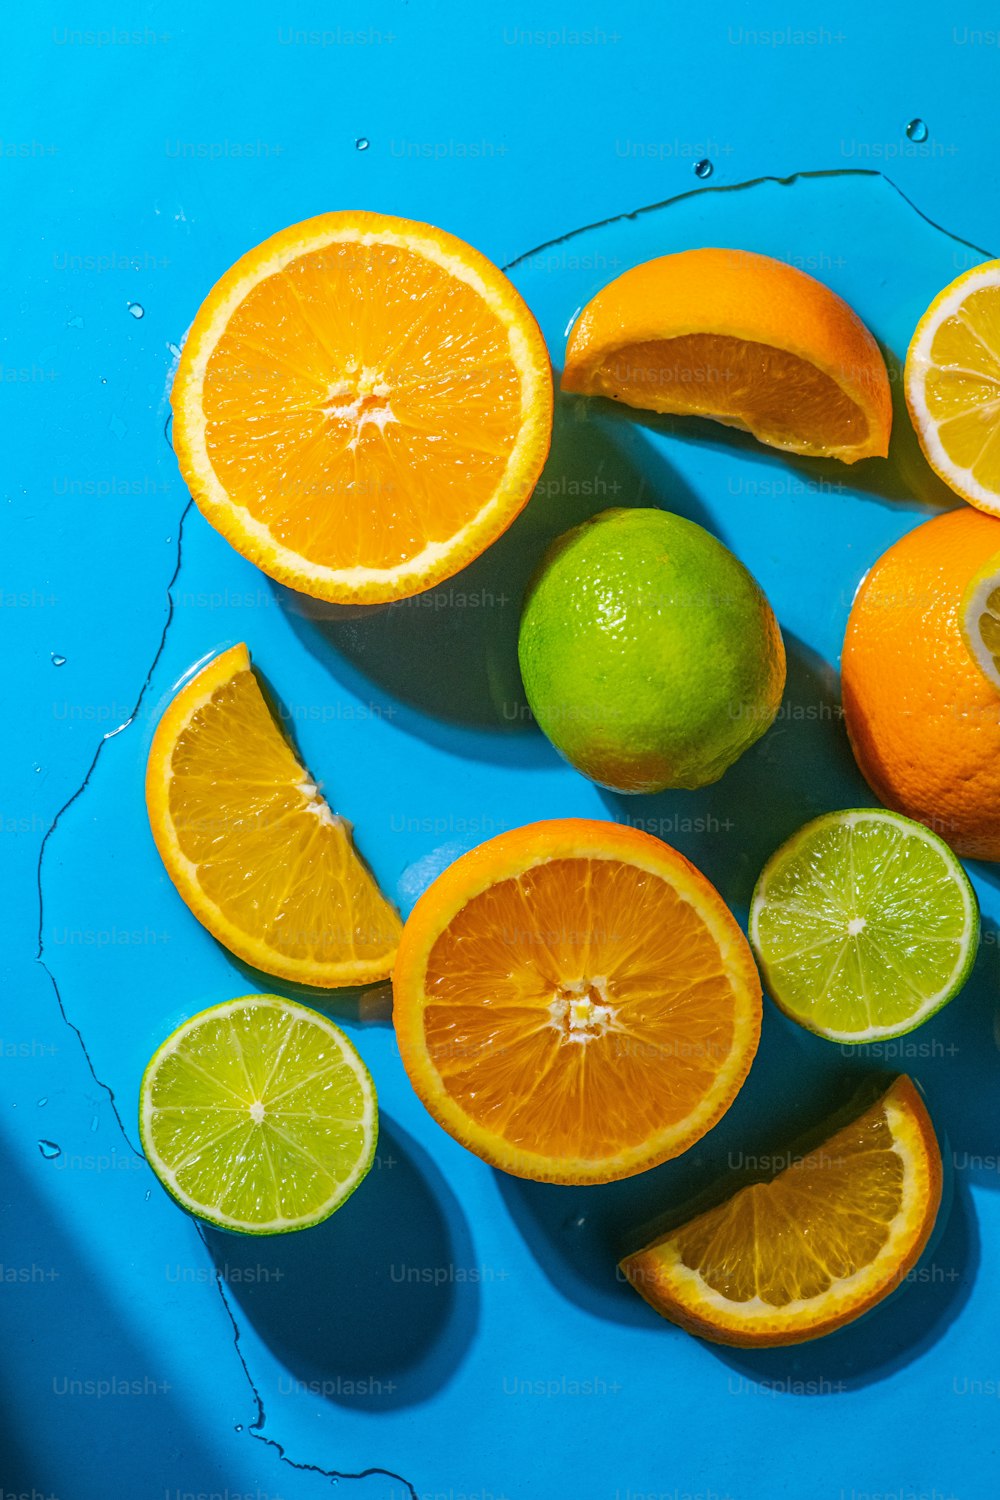 un groupe d’oranges et de limes sur une surface bleue